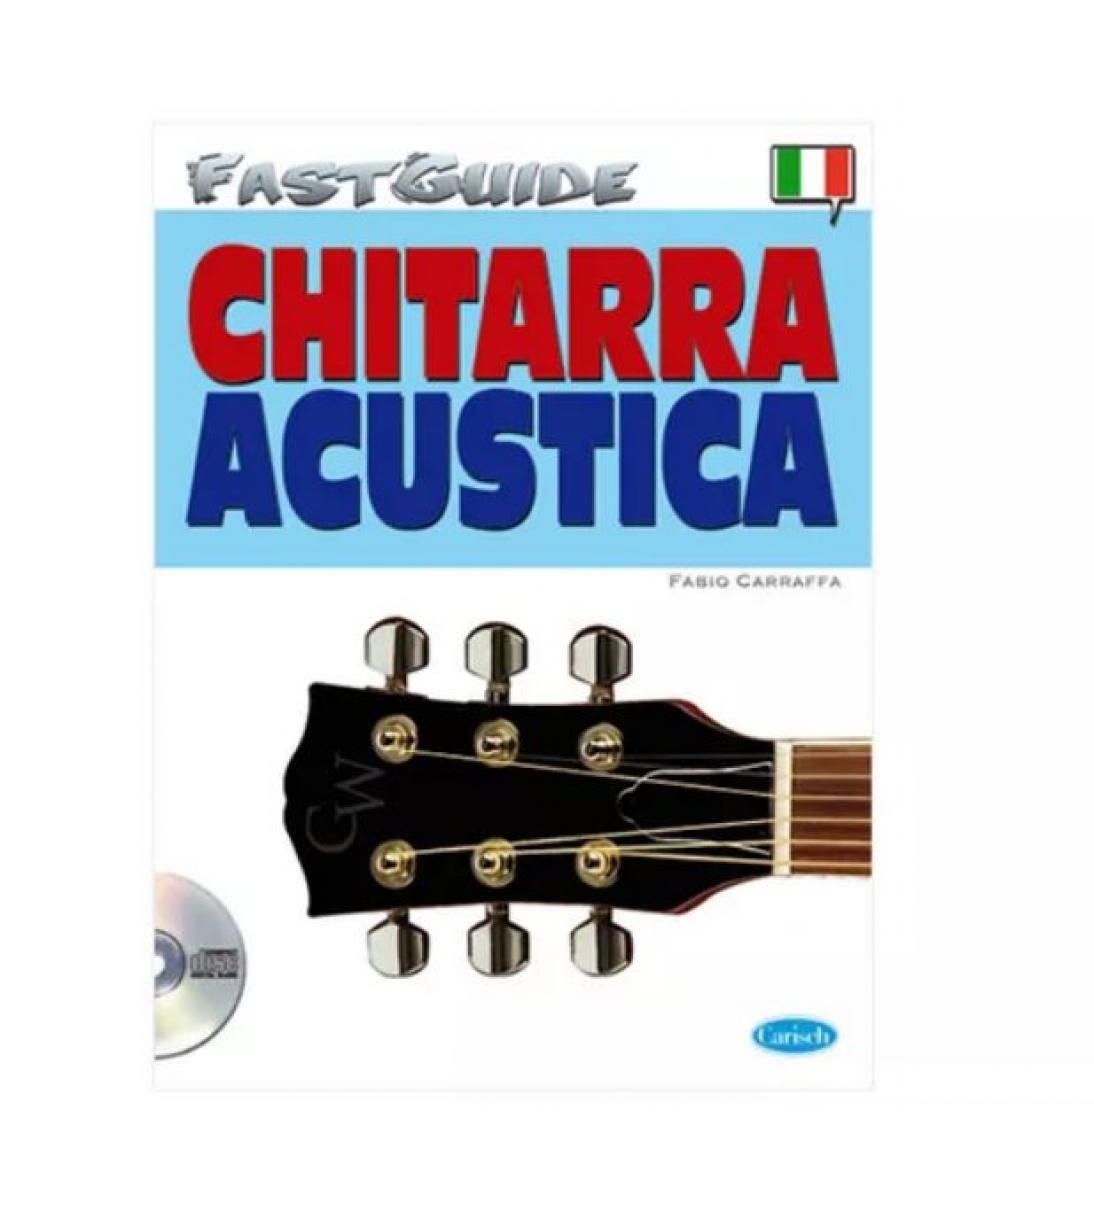 FAST GUIDE Chitarra Acustica + CD